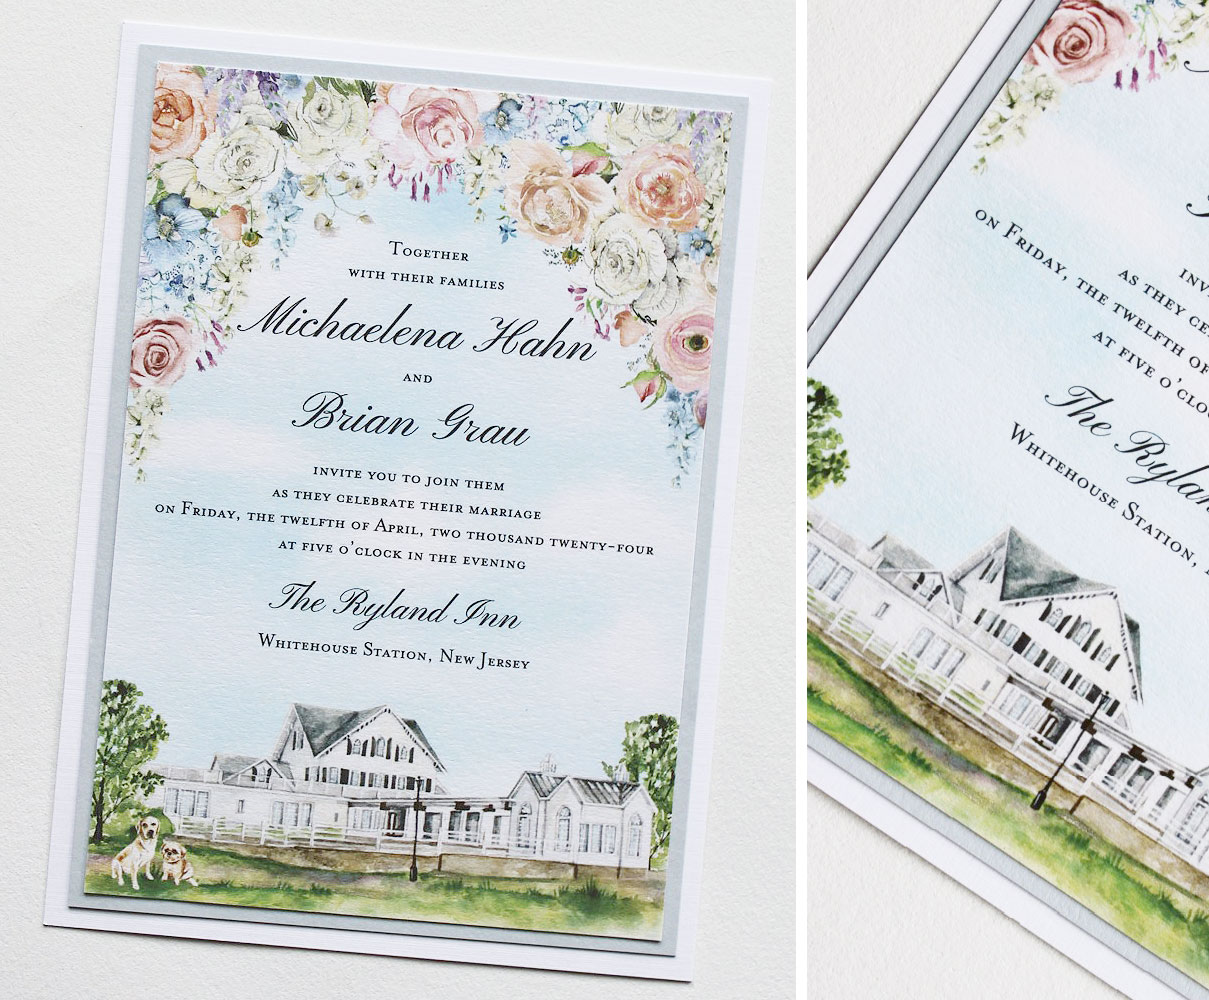 Ryland Inn Illustrated Wedding Invitations